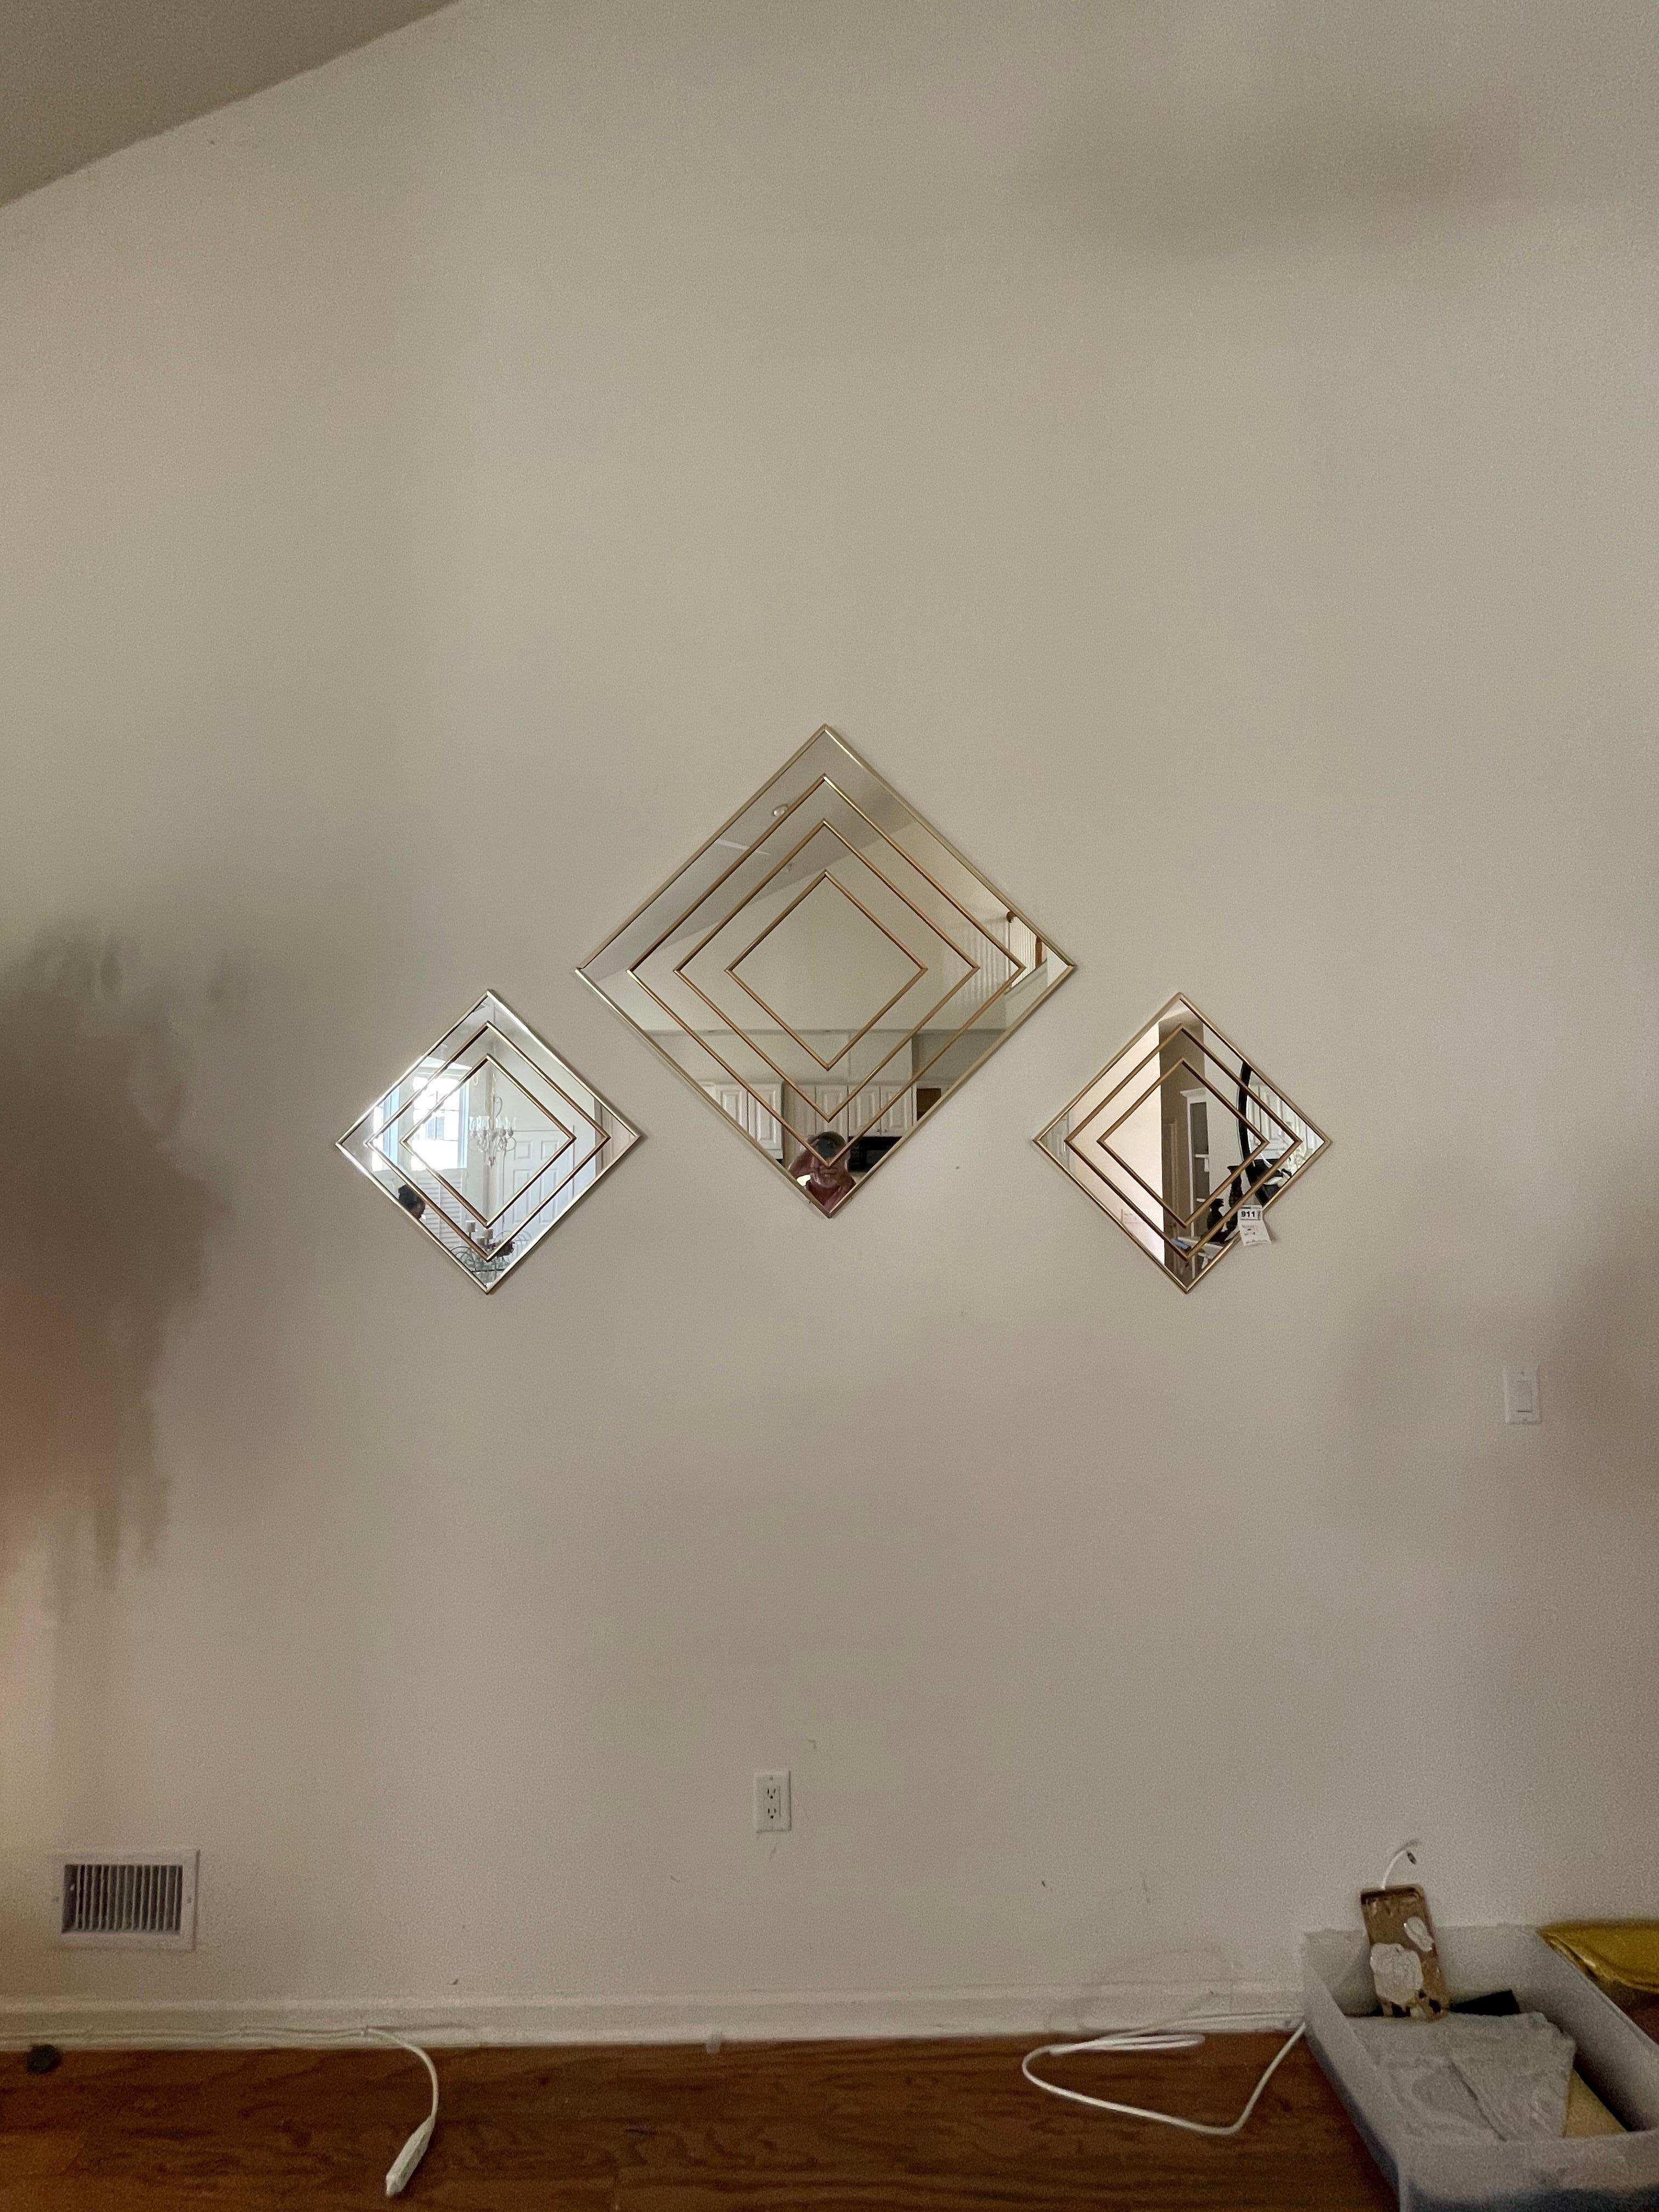 Un groupe de miroirs dorés de style post-moderne chic par Sharon Art Concept. Le miroir central mesure 30